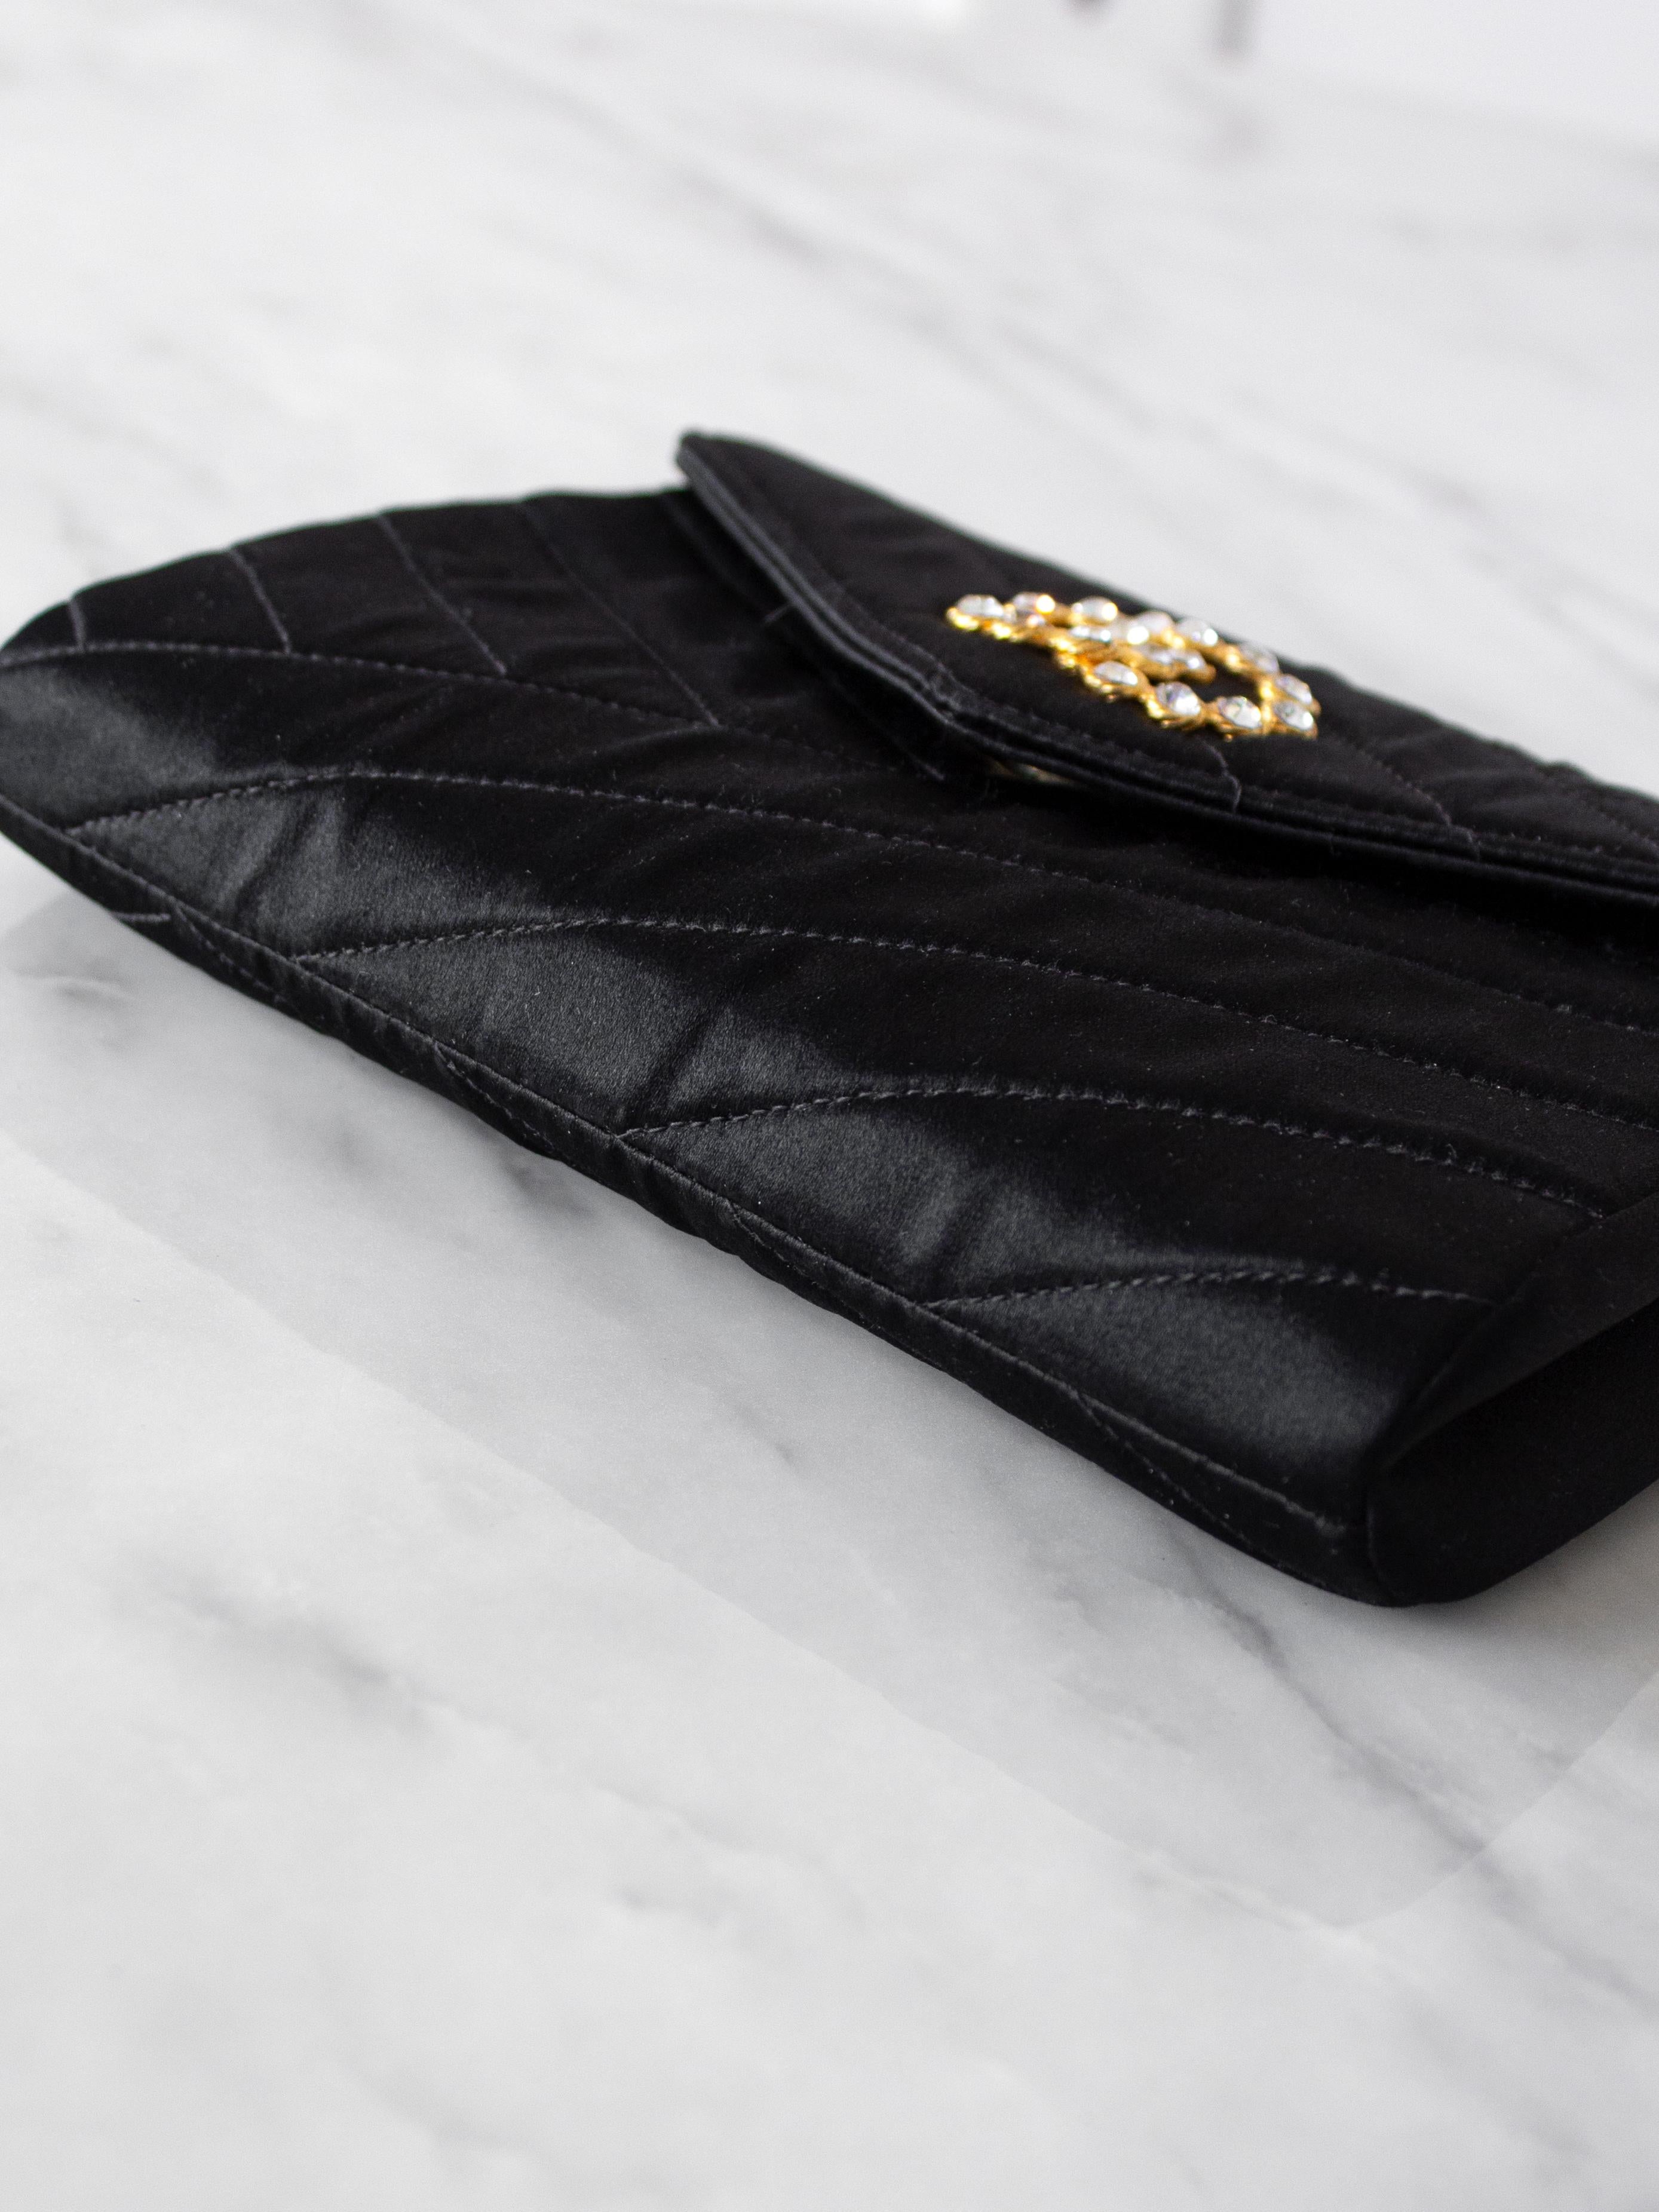 Chanel Vintage 1992 Black Gold Crystal Embellished CC Satin Diagonal Evening Bag For Sale 2